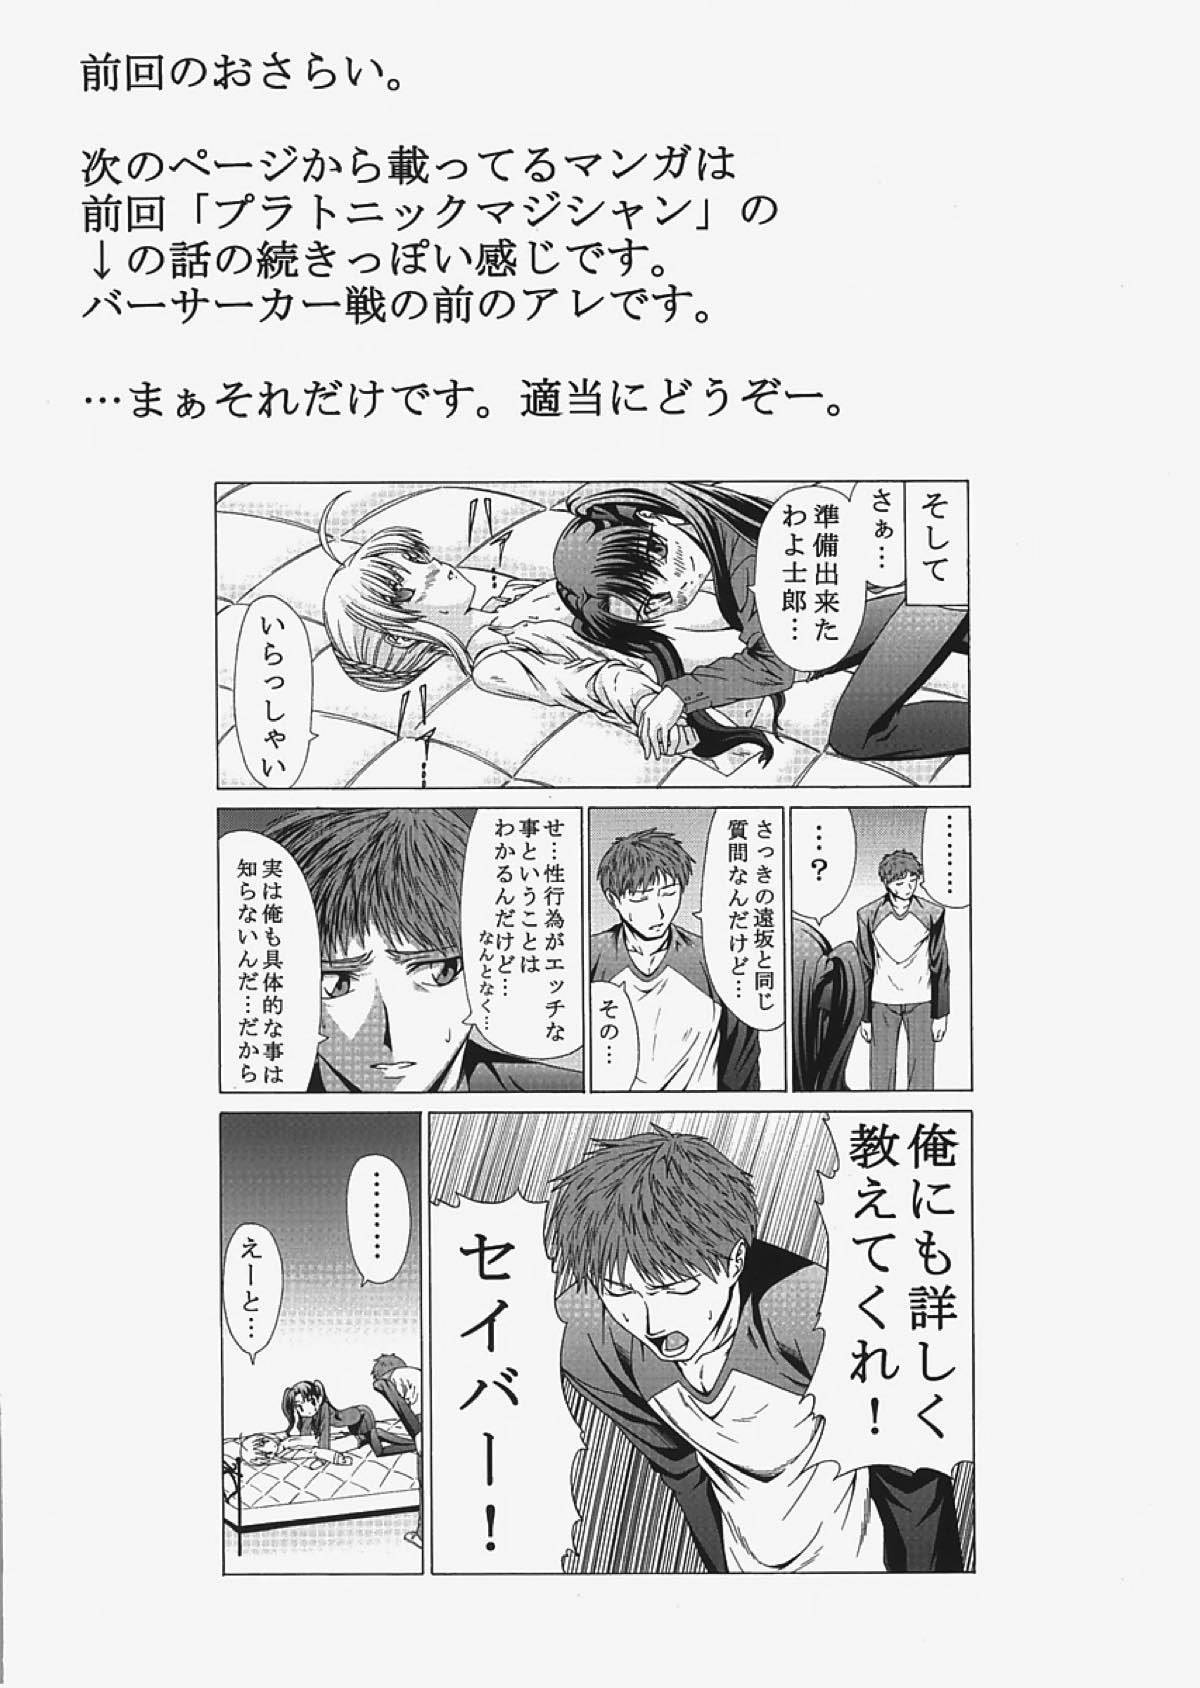 saber〜ヒロユキFate同人誌総集編+α〜 38ページ